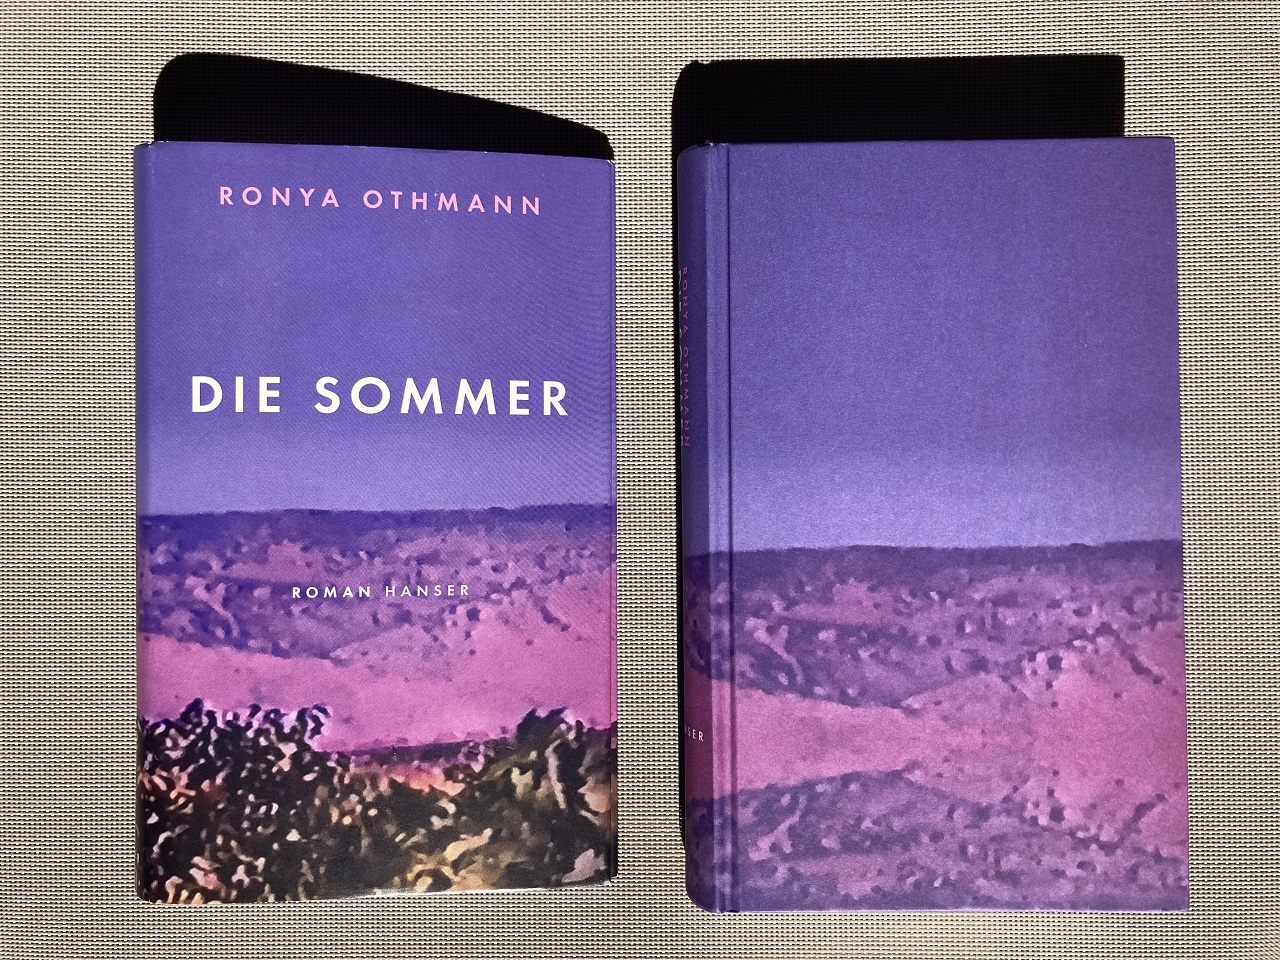 Das Buchcover und der Einband des Romans "Die Sommer" von Ronya Othmann ist eine Landschaft.